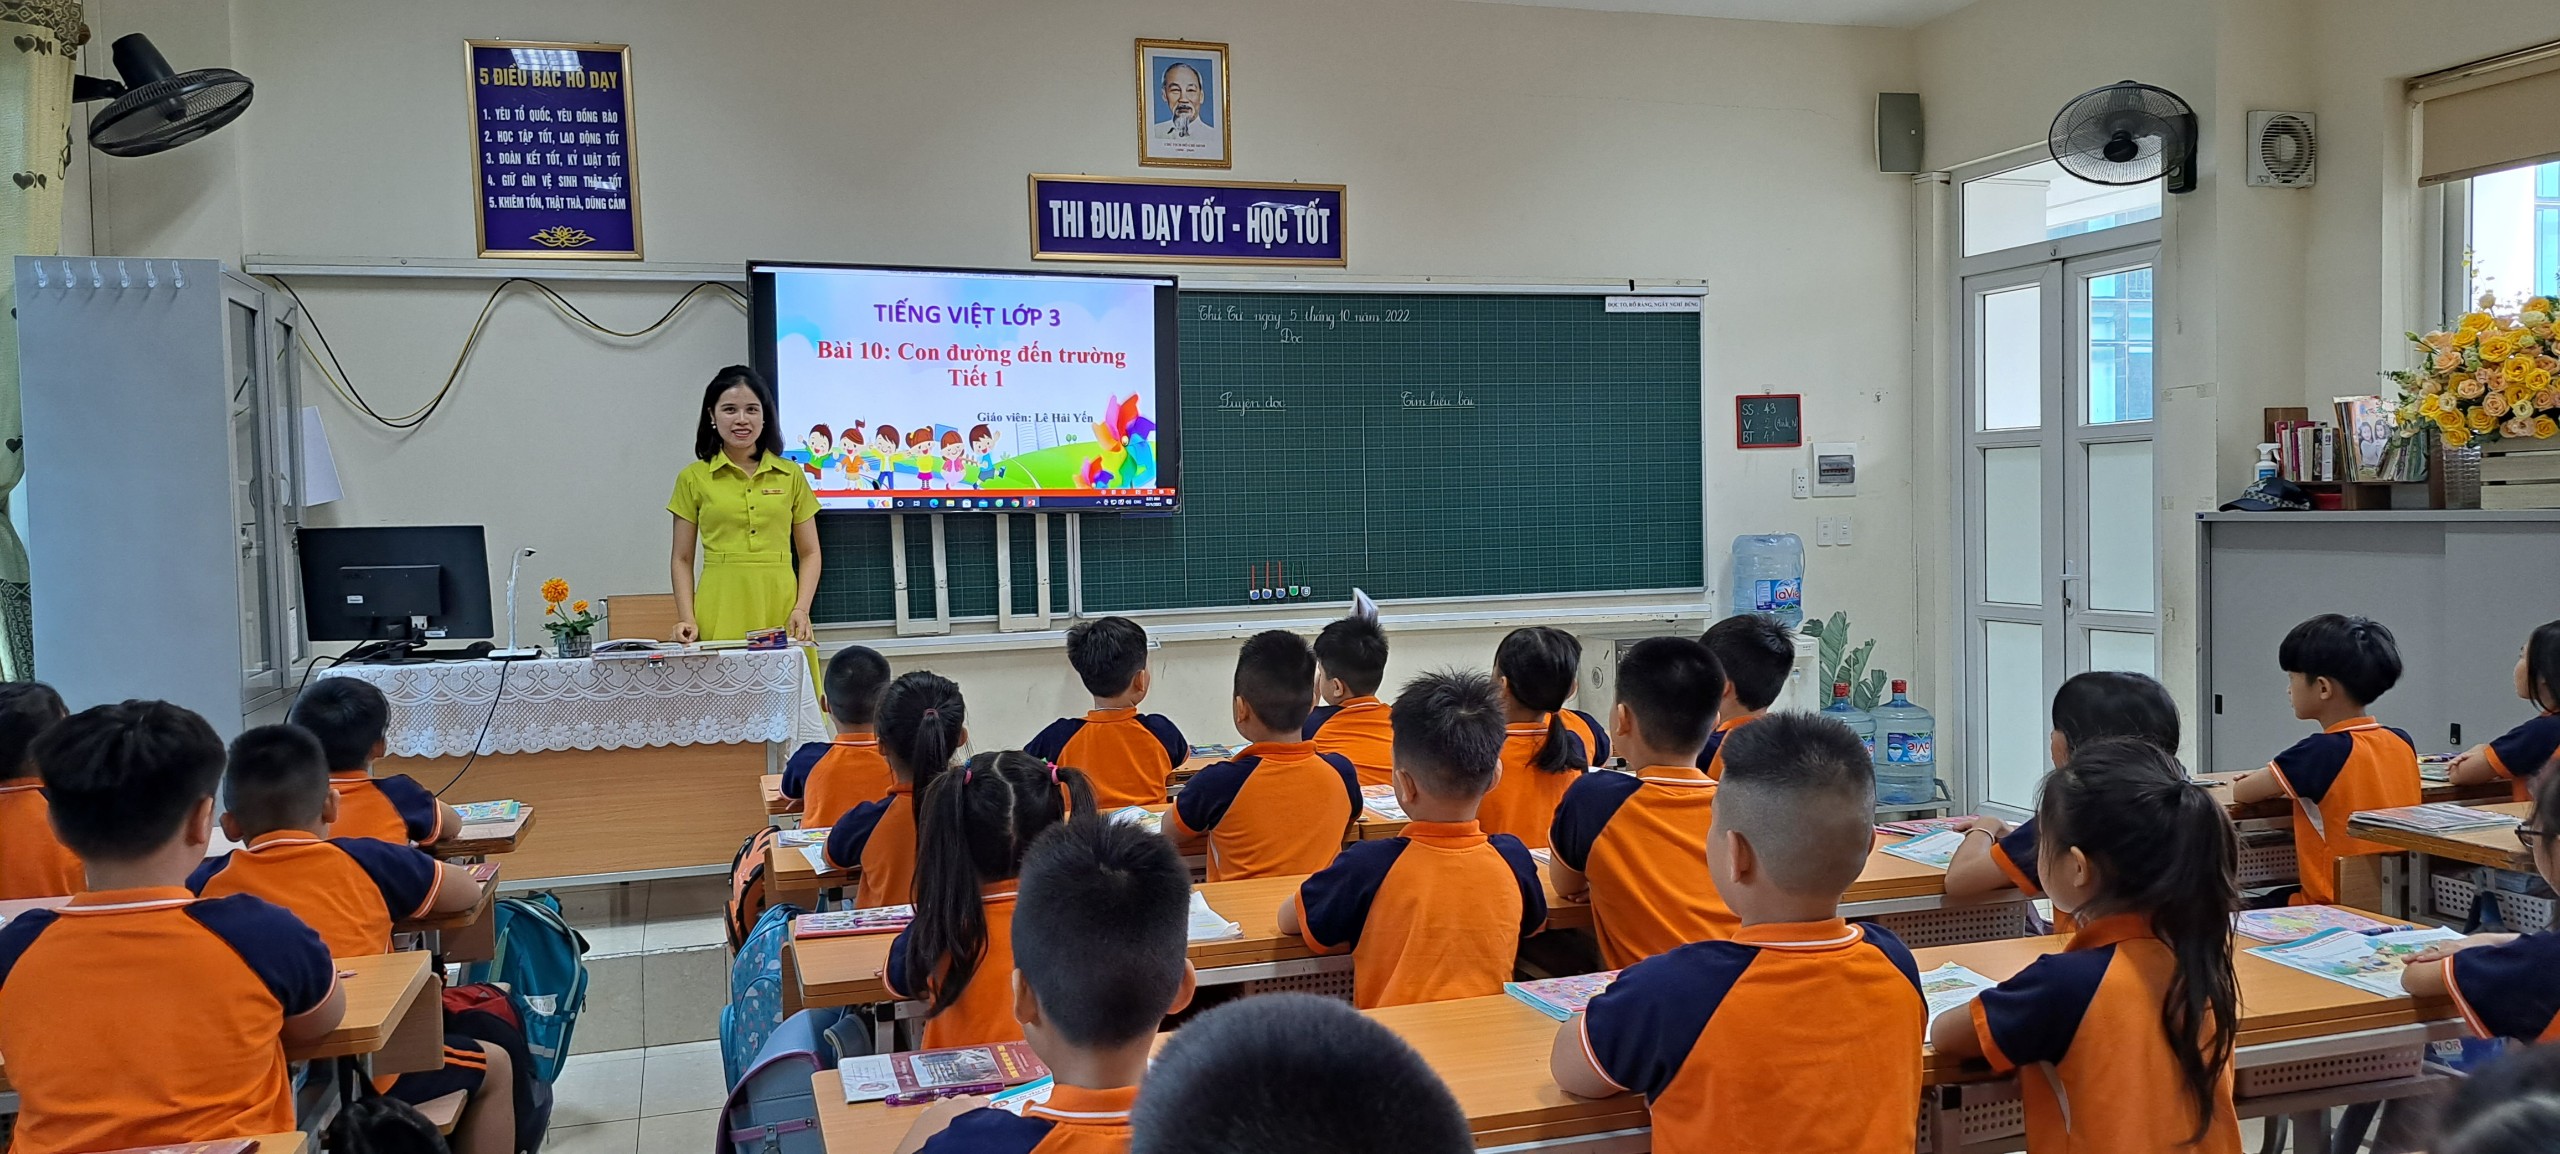 Trường TH Việt Nam - Cu Ba tổ chức thành công chuyên đề cấp trường môn Tiếng Việt lớp 3